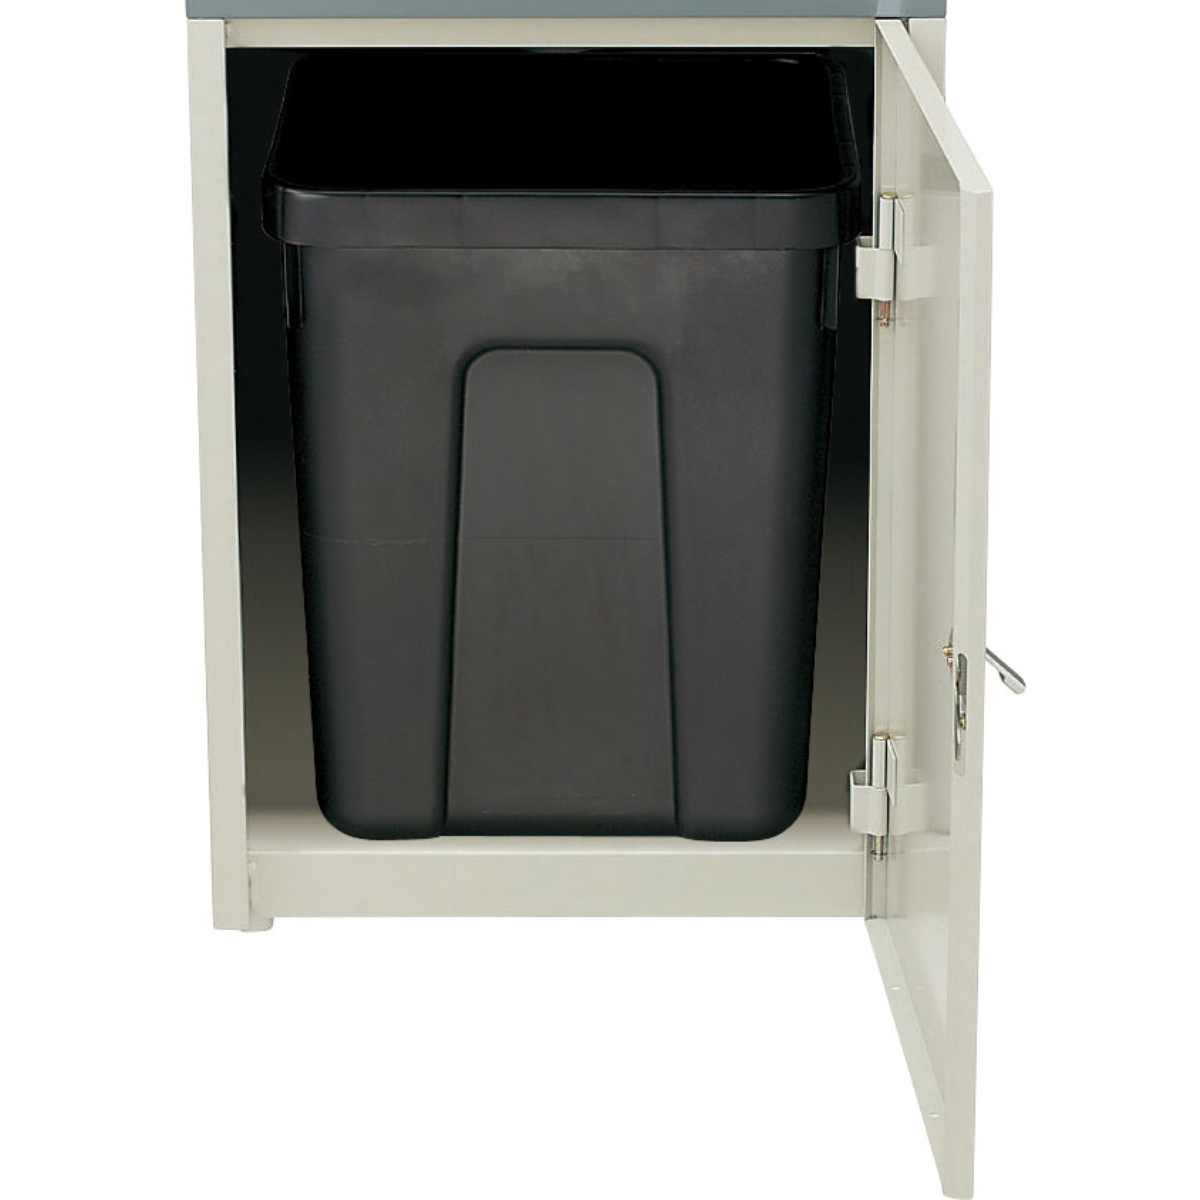 法人限定） 屋外用ゴミ箱 60L もえるゴミ 業務用ダストボックス 